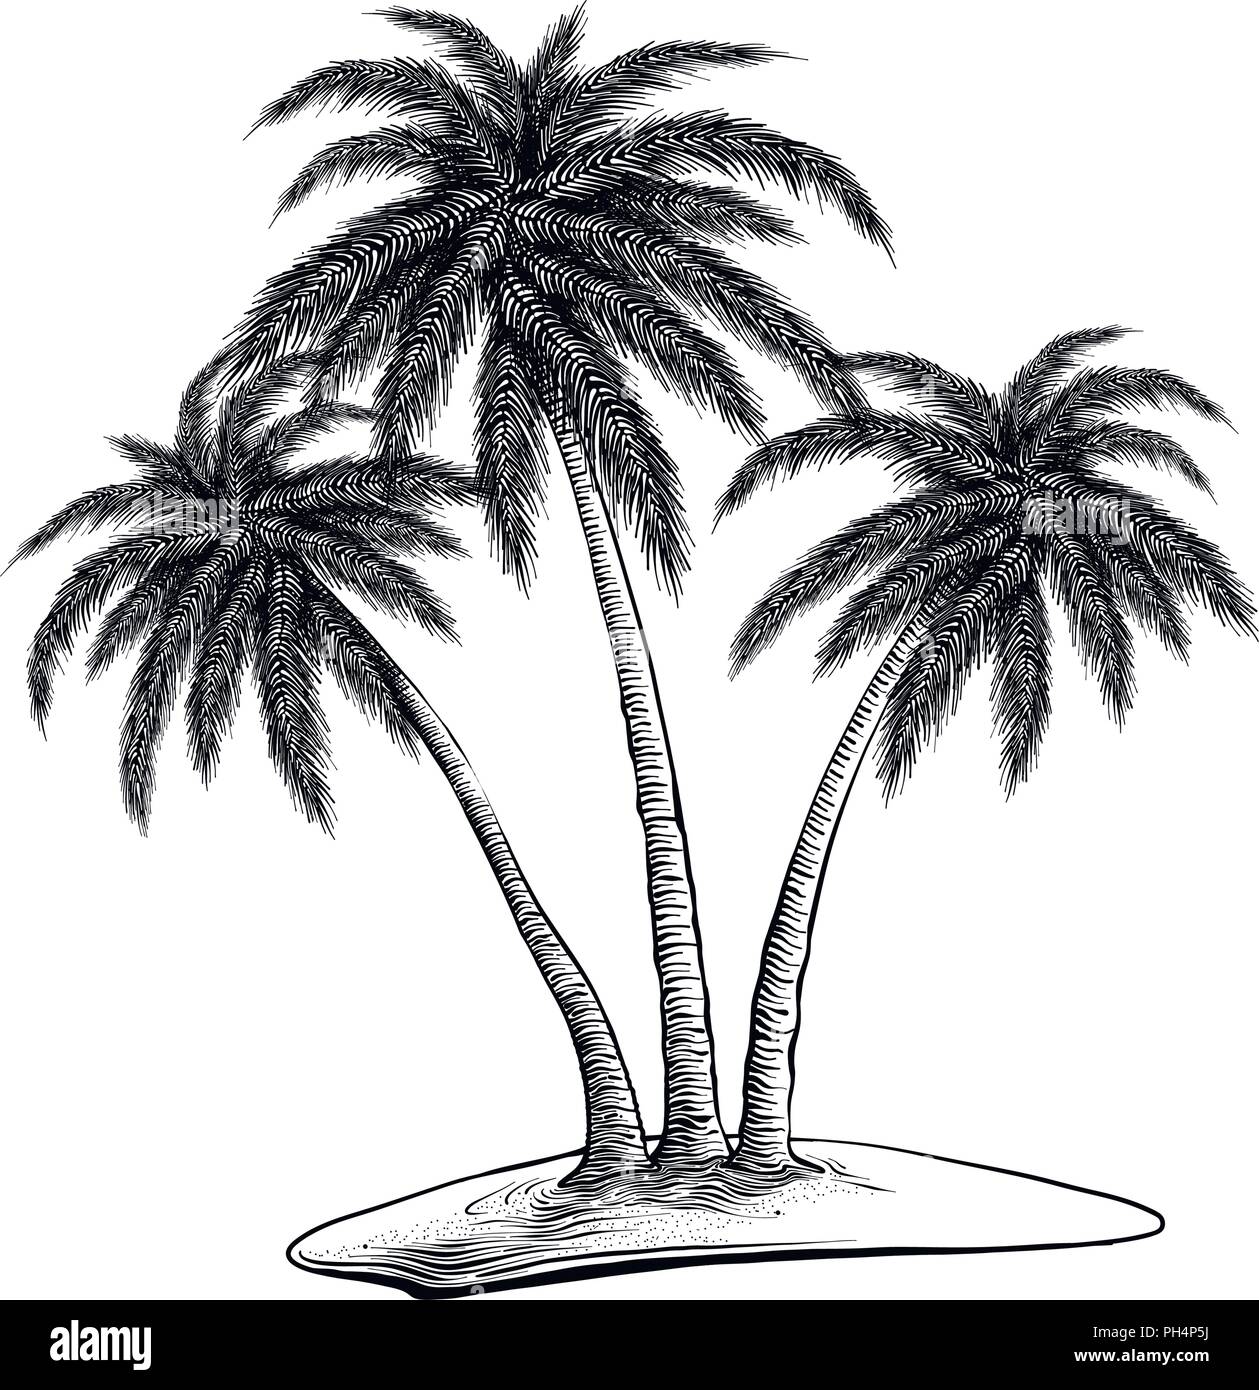 Hand gezeichnete Skizze von Palmen in schwarz auf weißem Hintergrund.  Detaillierte Vintage Style Zeichnung. Vector Illustration  Stock-Vektorgrafik - Alamy